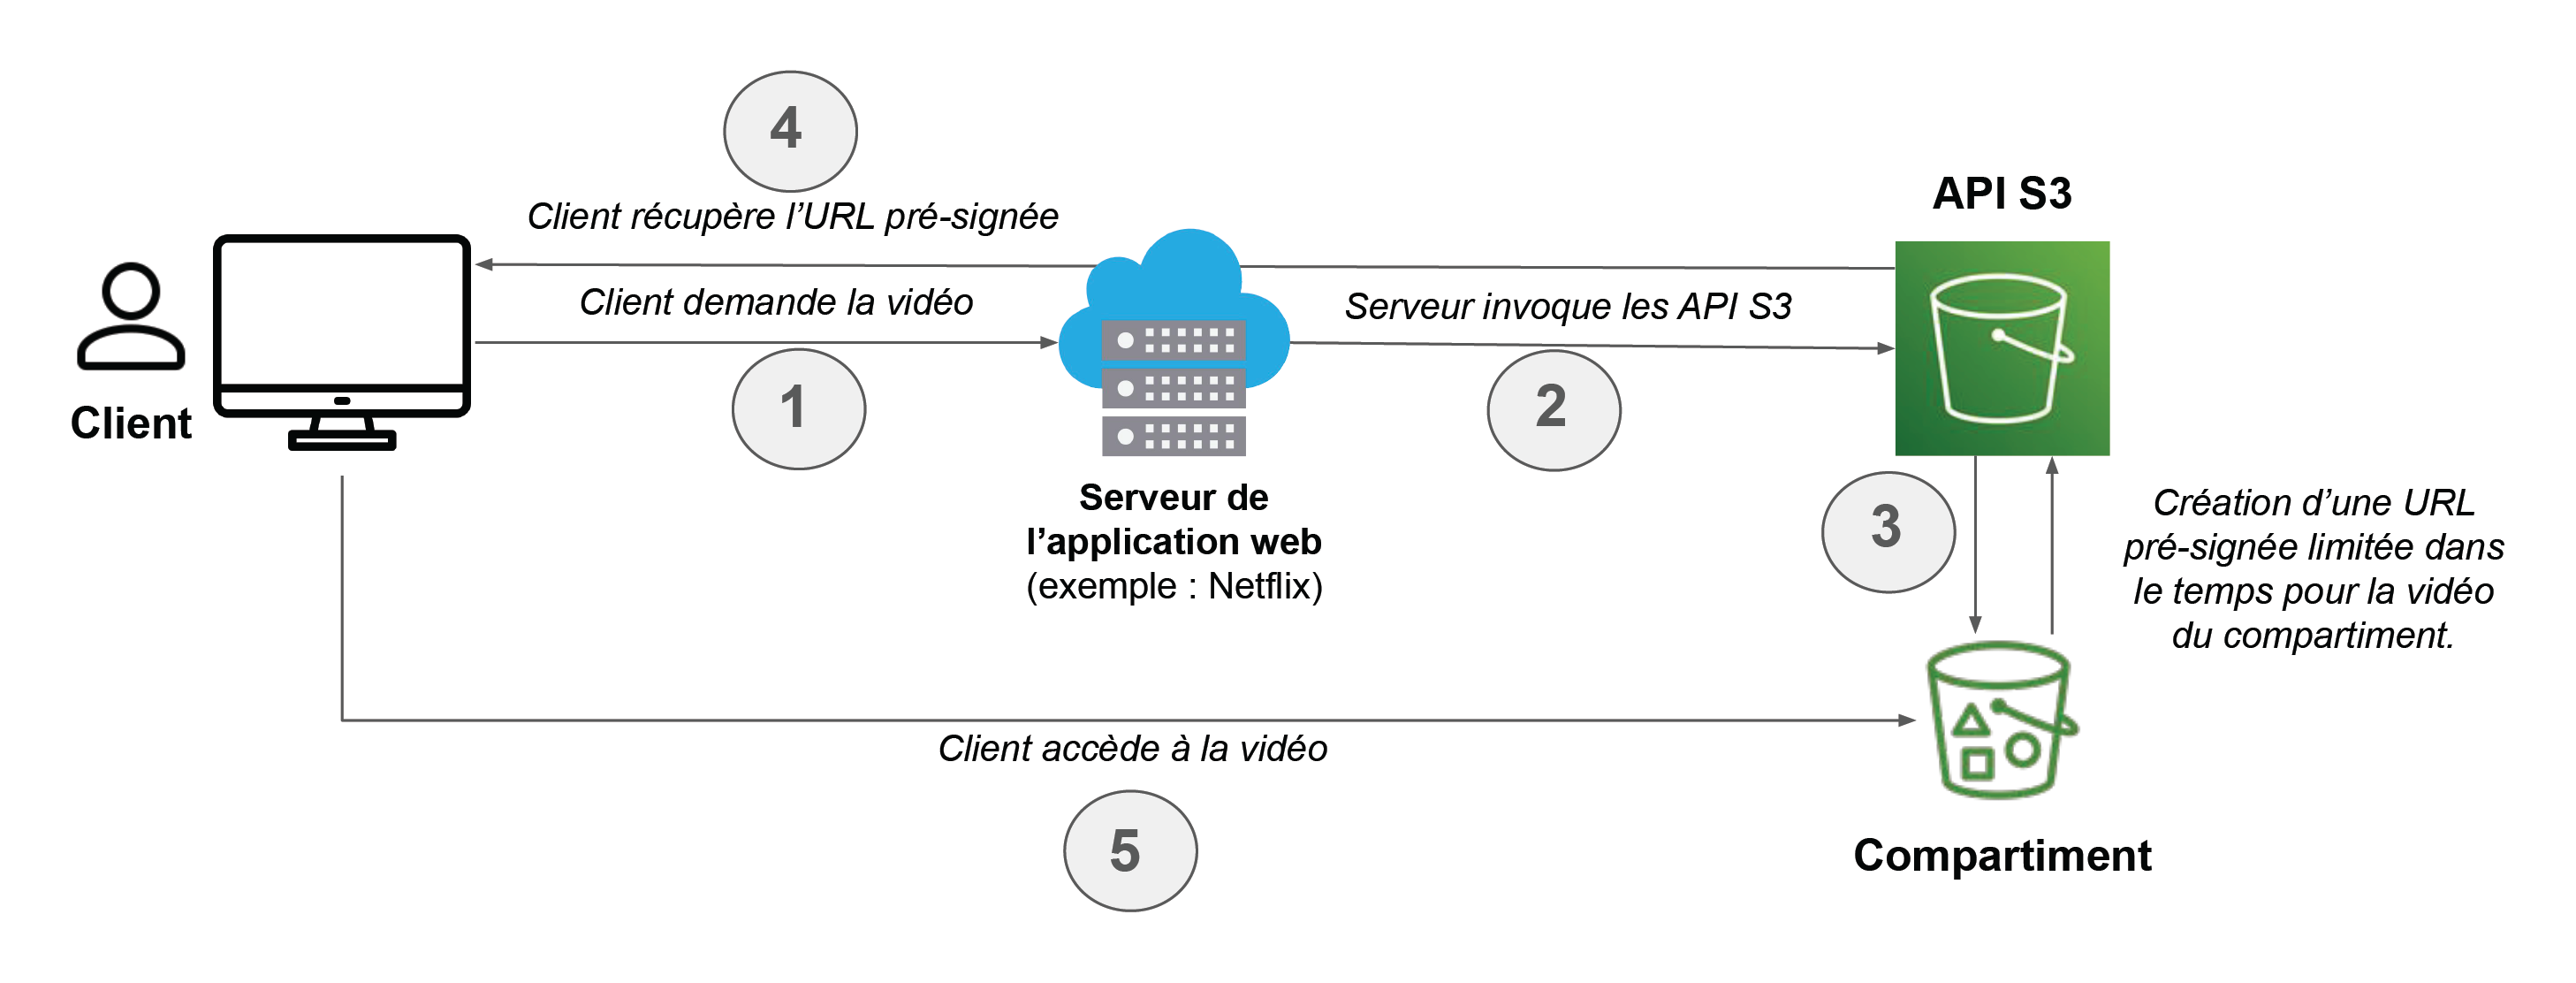 Schéma illustrant les 5 échanges entre client à droite, serveur au milieu, API S3 en haut à droite et compartiment en bas à droite.